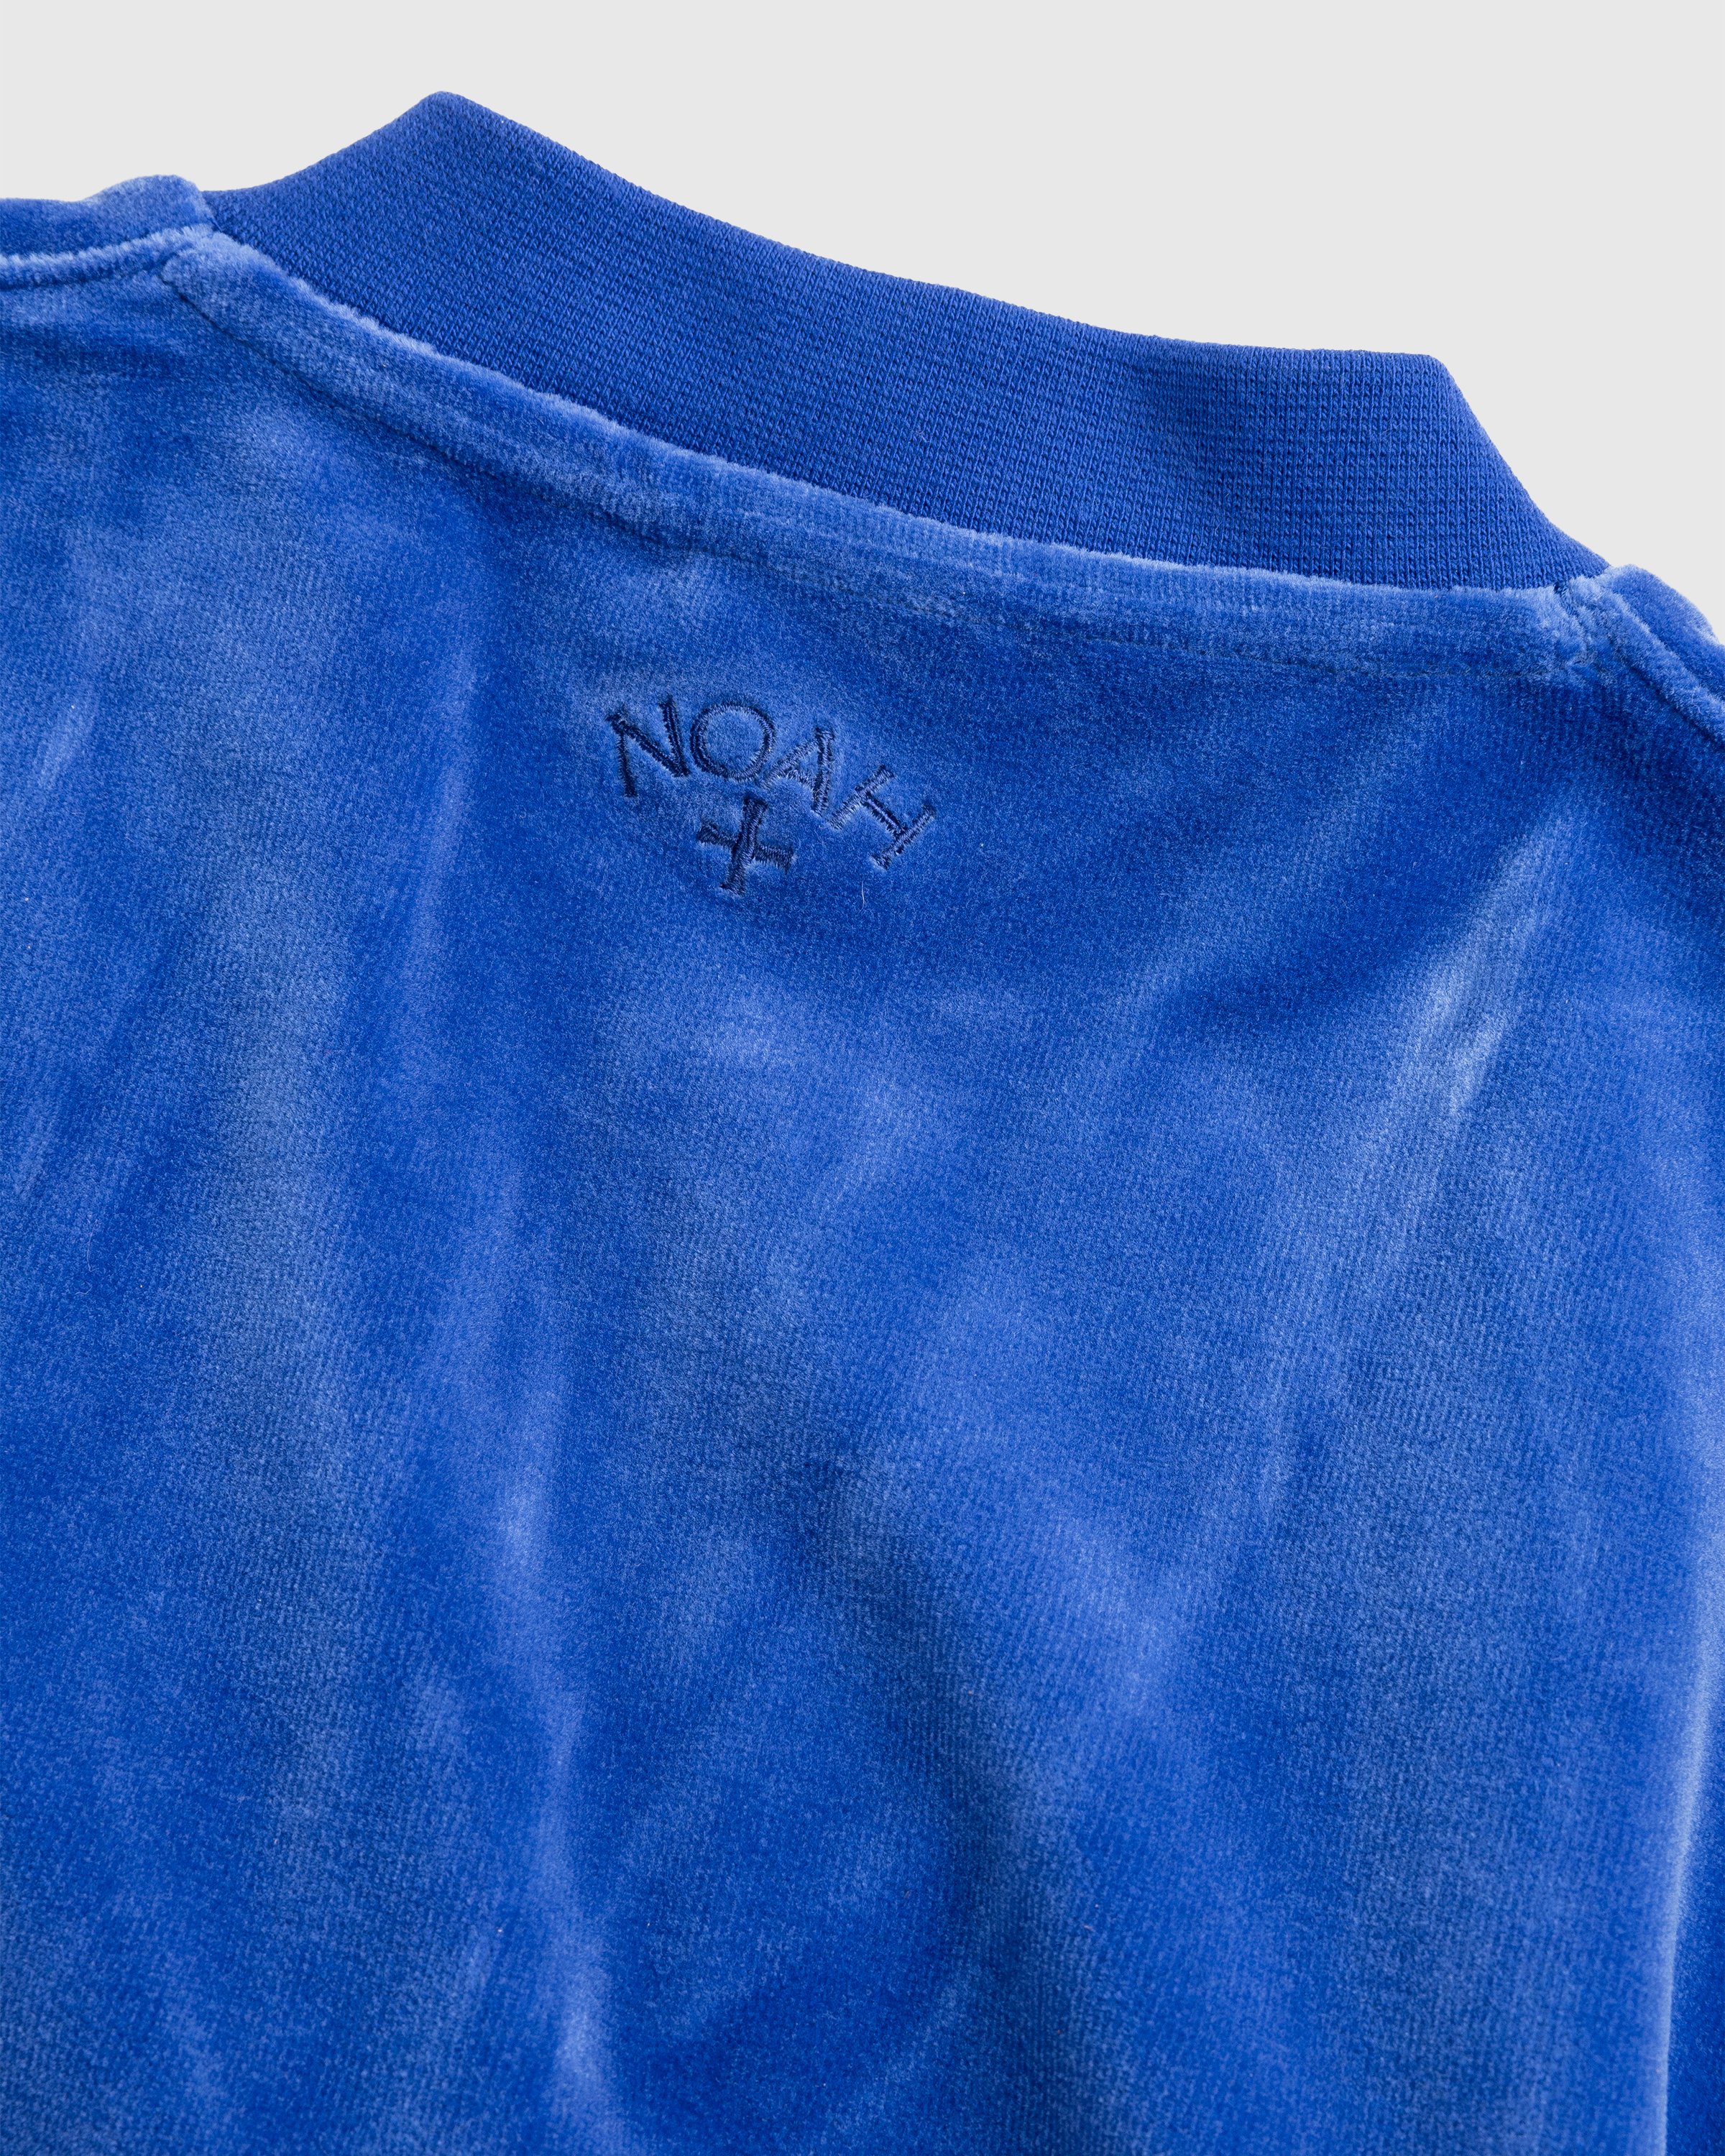 Puma x Noah - Vest Blue - Clothing - Blue - Image 7